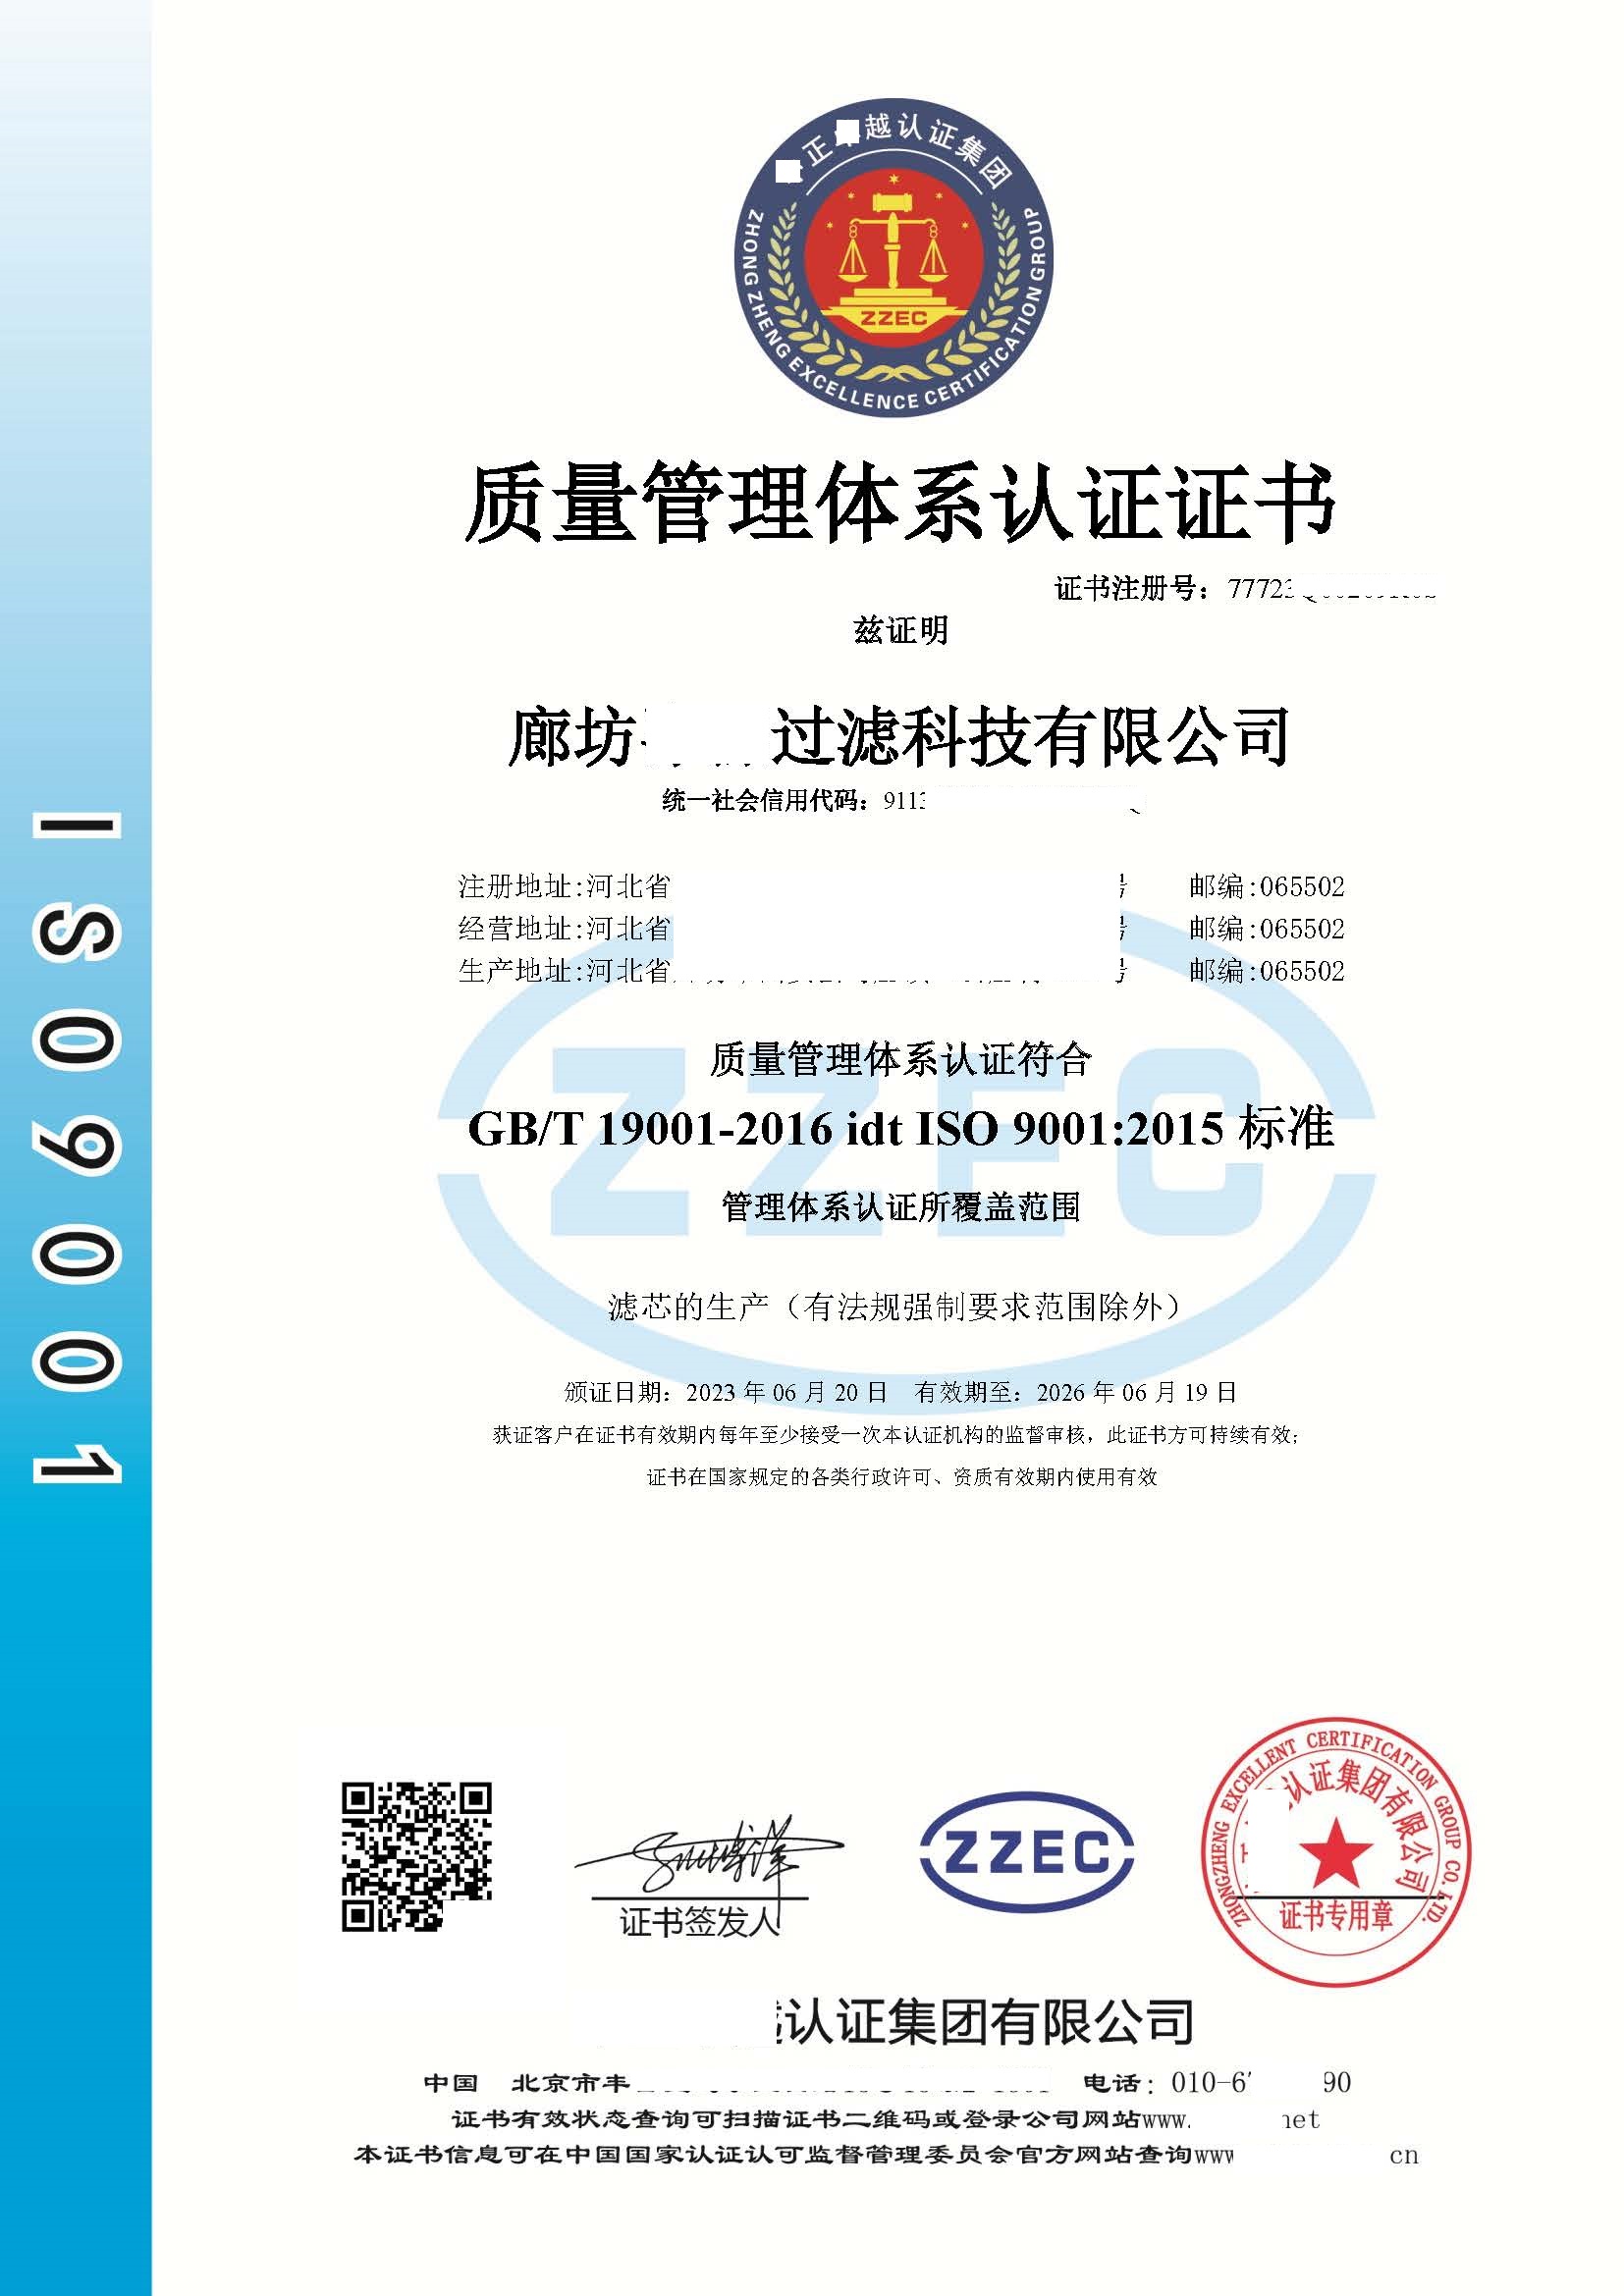 	恭喜天津**企业管理服务有限公司获得质量/环境/职业健康安全管理体系认证证书